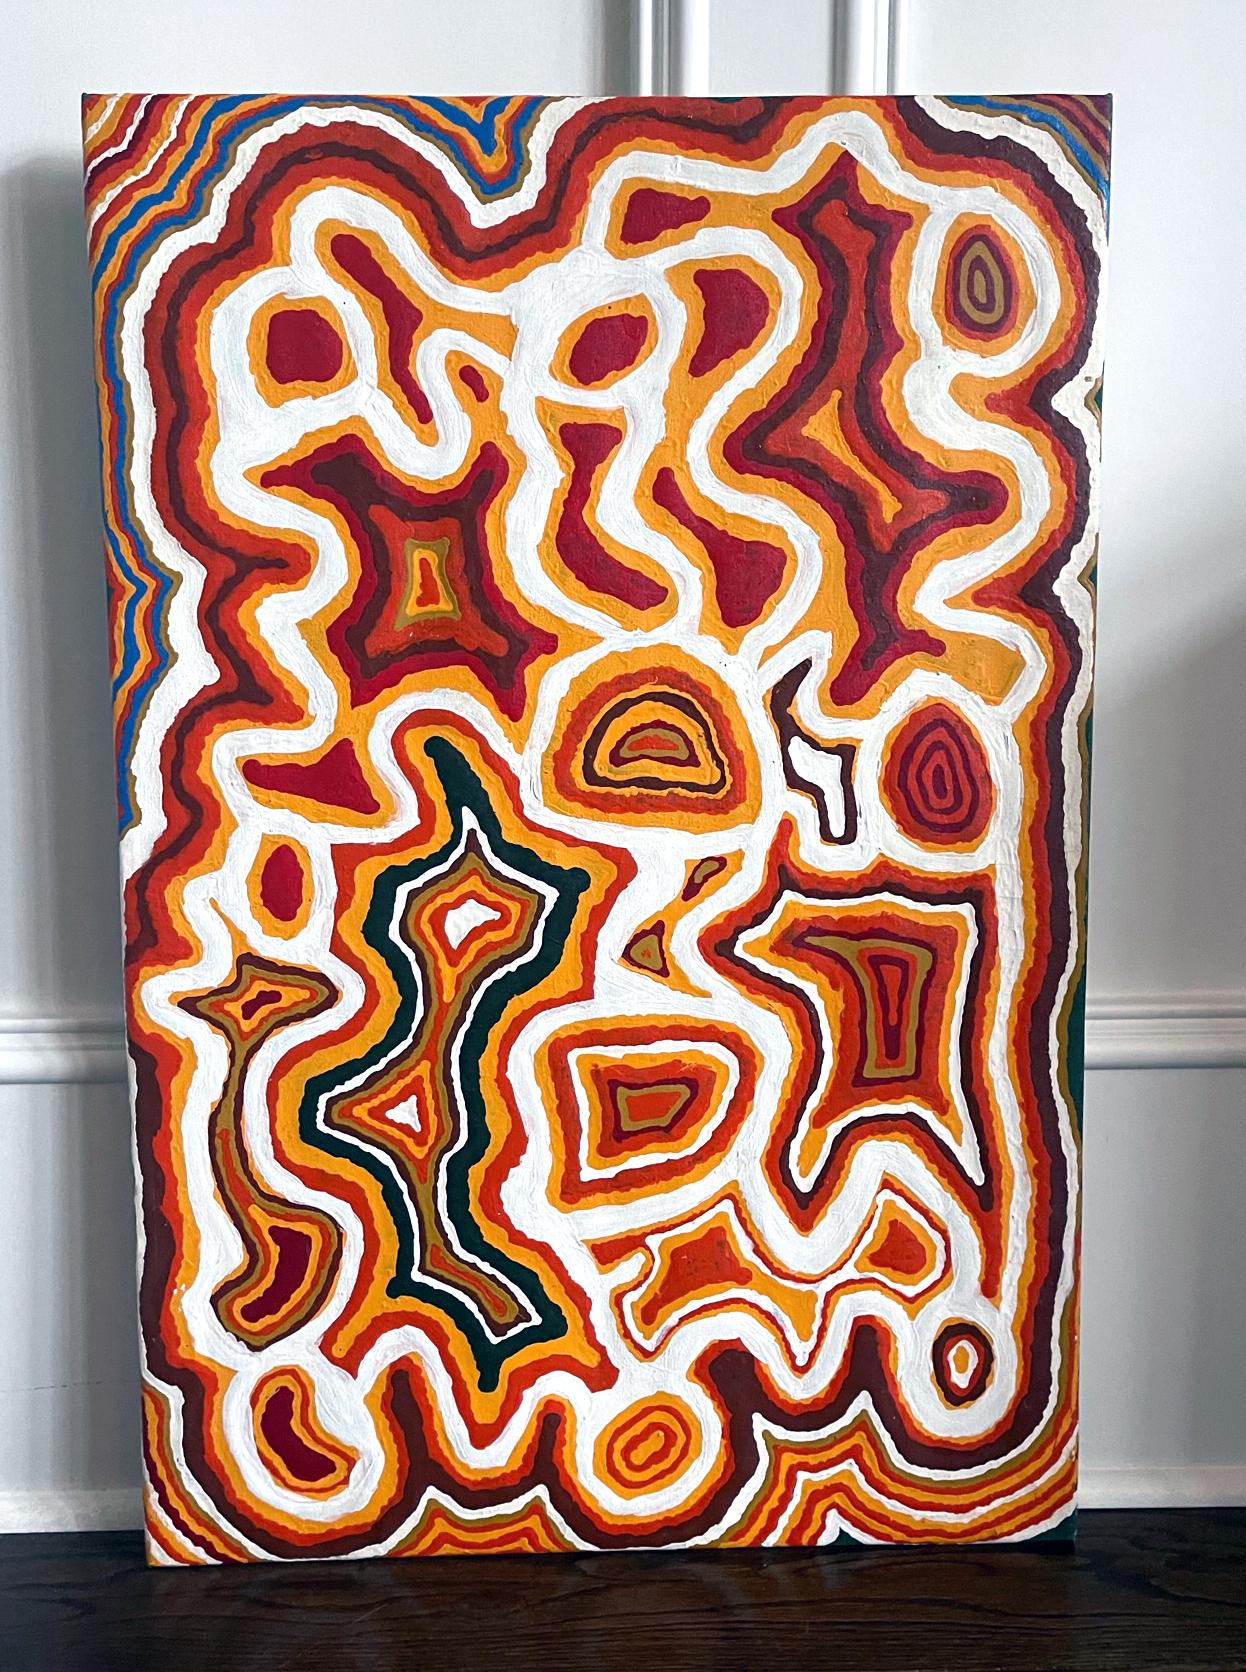 Une peinture aborigène contemporaine de l'artiste australien Ningie Nangala (né en 1938-). La toile colorée représente le pays ancestral de l'artiste, appelé Nawilyi, dans le Grand Désert de Sable, parsemé de lacs salés. La zone encerclée de vert